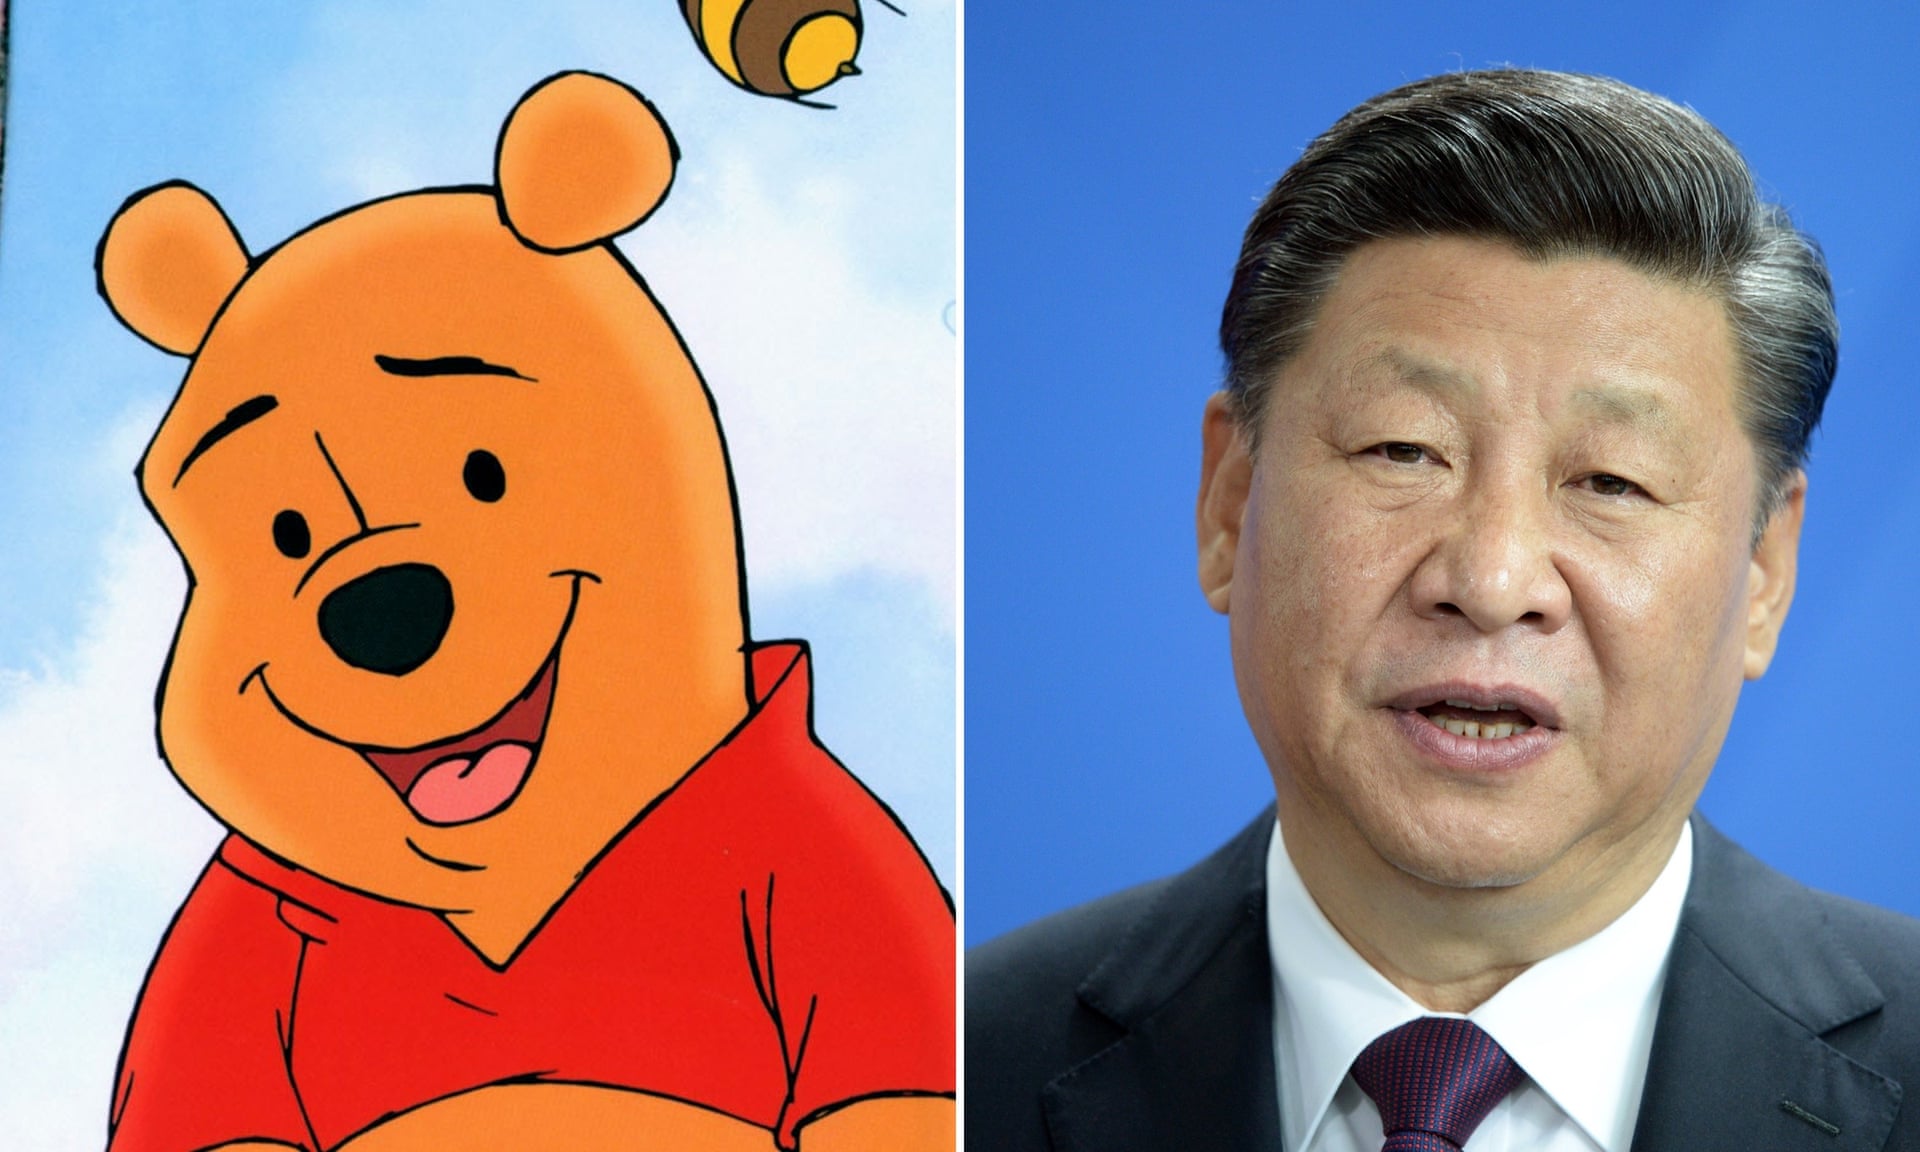 بدنبال انتشار یک اپیزود انتقادی از سریال انیمیشن «South Park» نسبت به سانسور و خفقان در این کشور، پخش این سریال در چین ممنوع شده است.